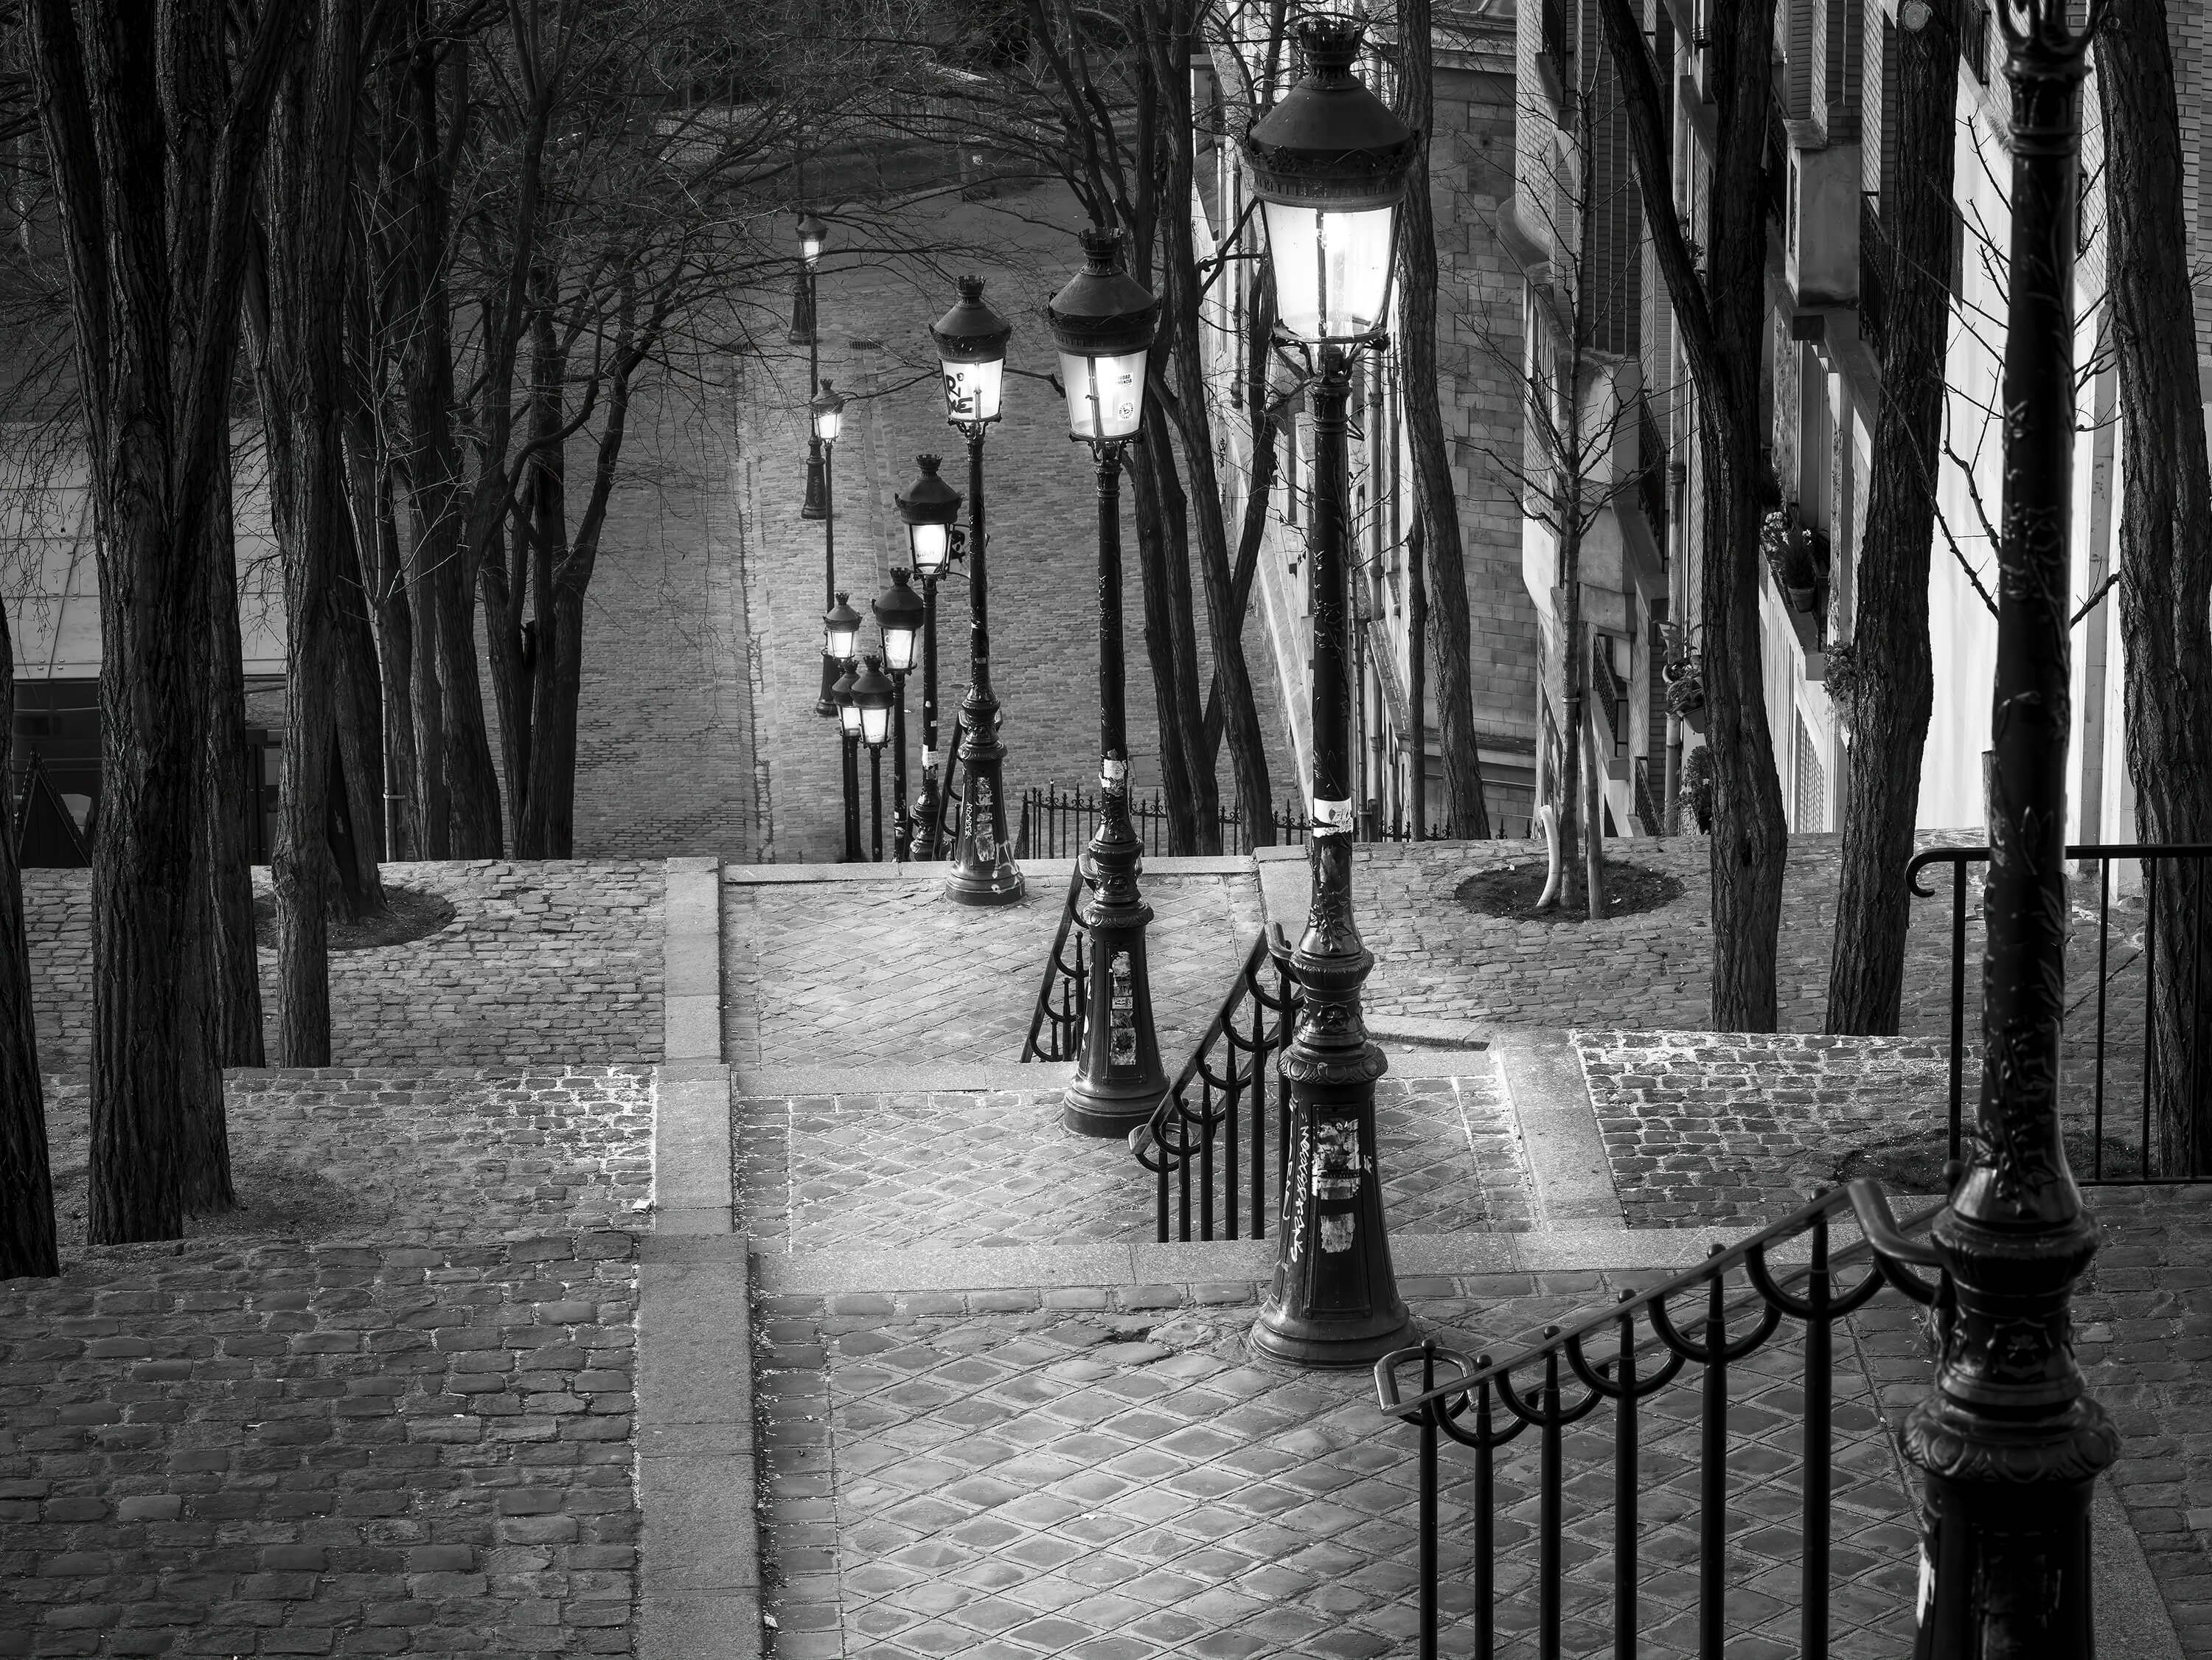  Soirée tranquille à Montmartre